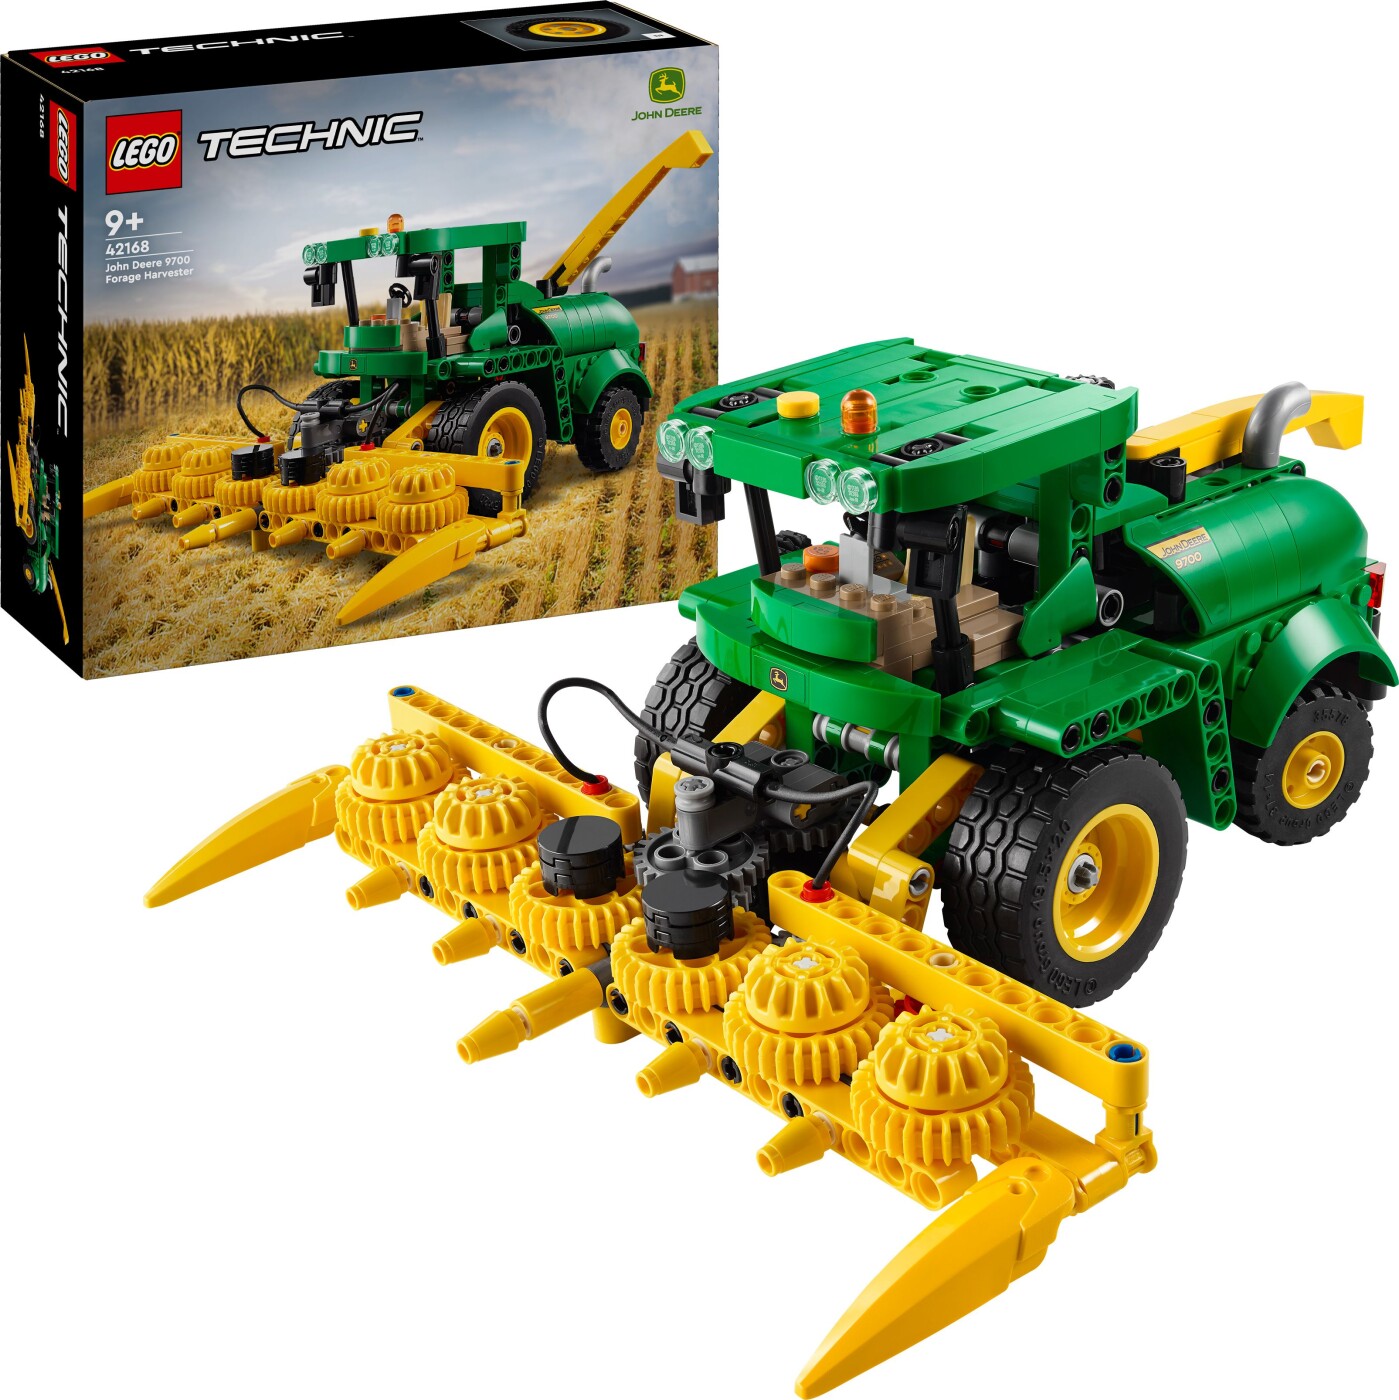 Billede af Lego Technic - John Deere 9700 Forage Harvester - 42168